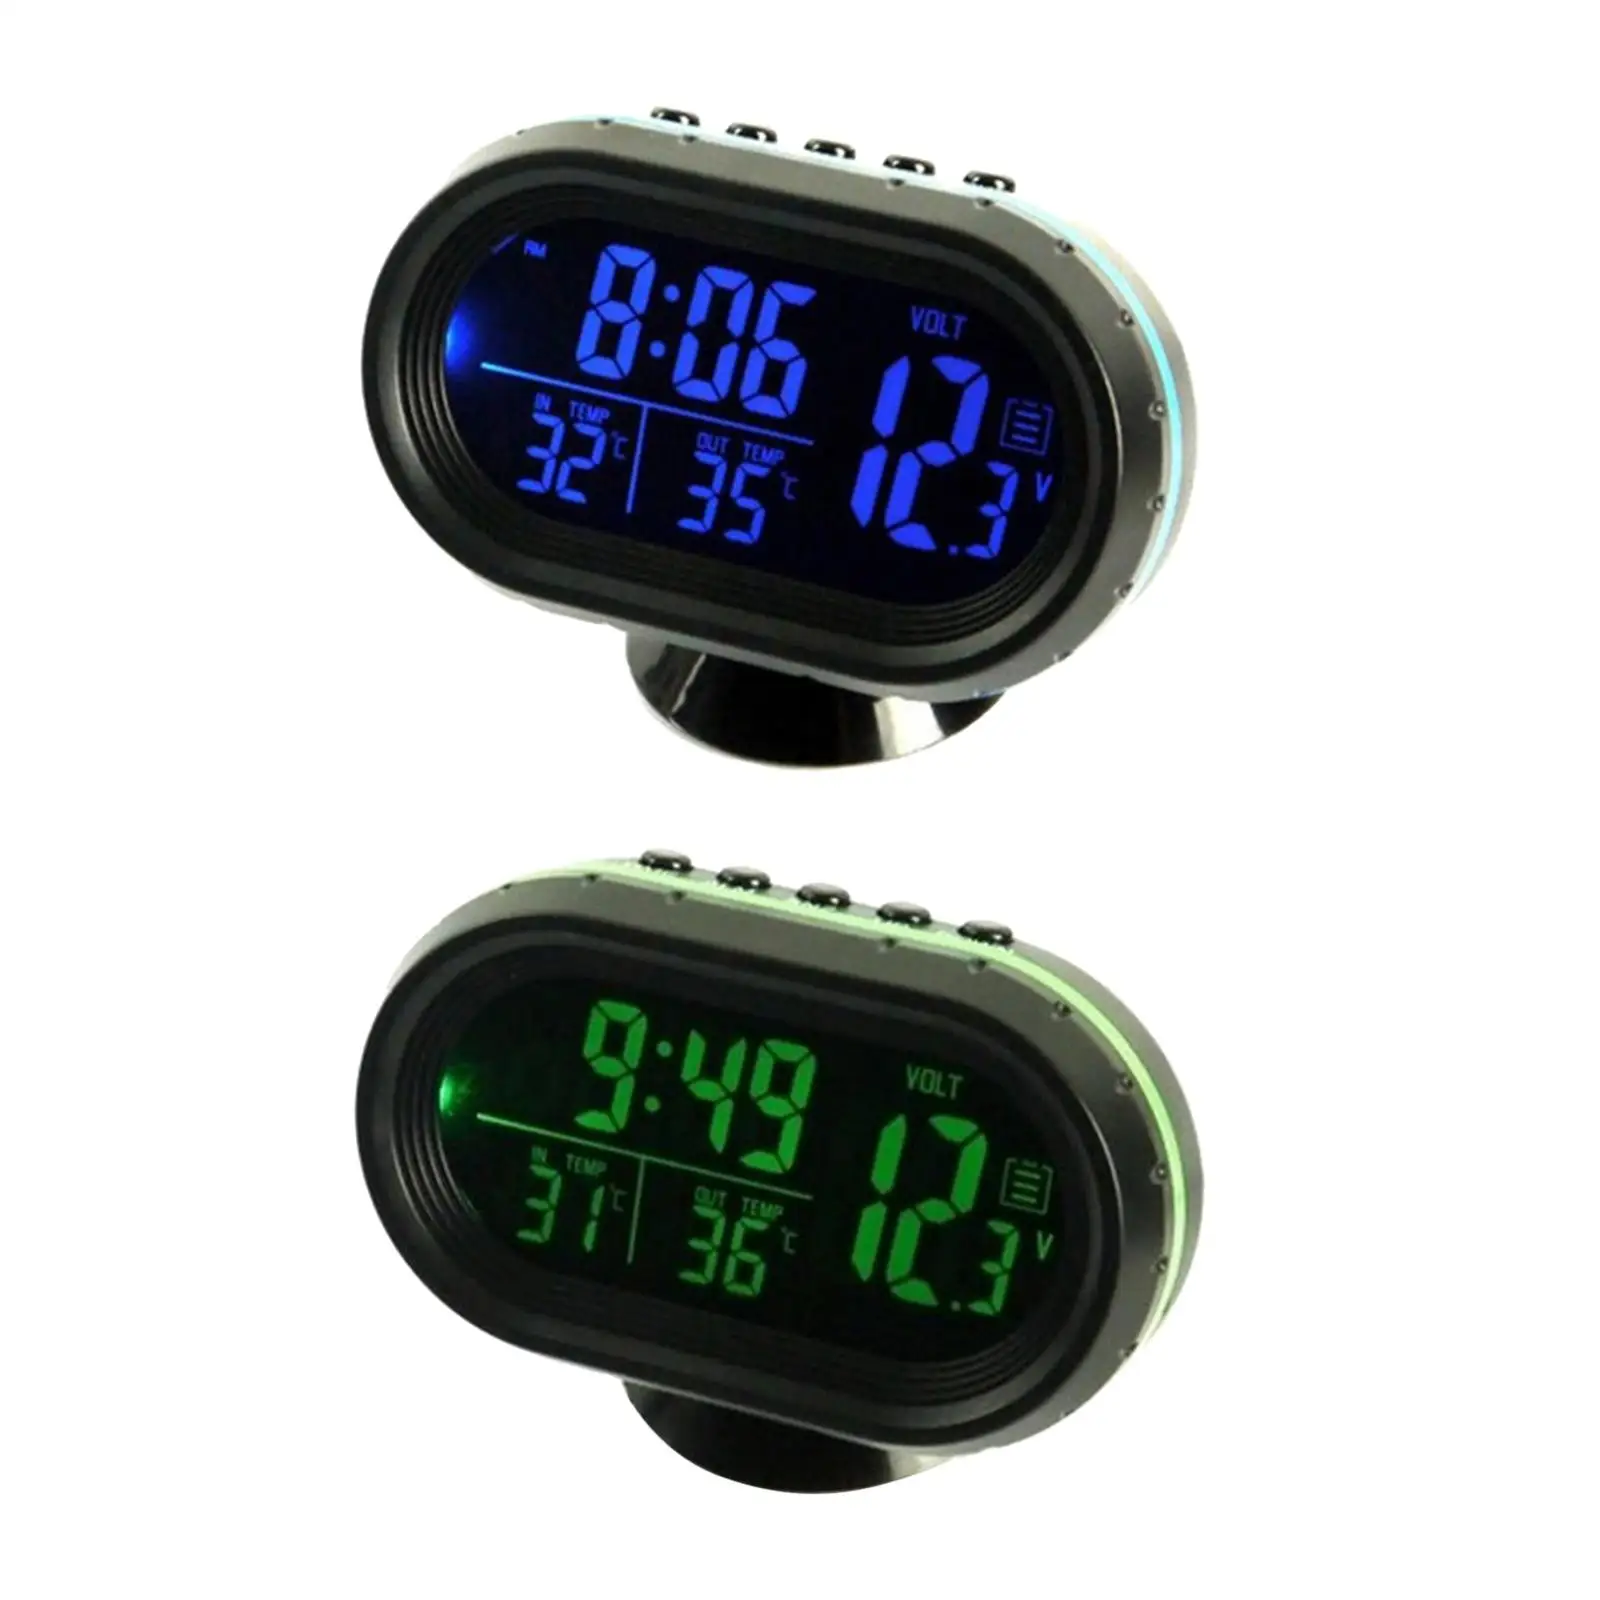 Car Digital Thermometer Clock Voltmeter Battery Meter Dual Temperature Gauge Alarm Monitor